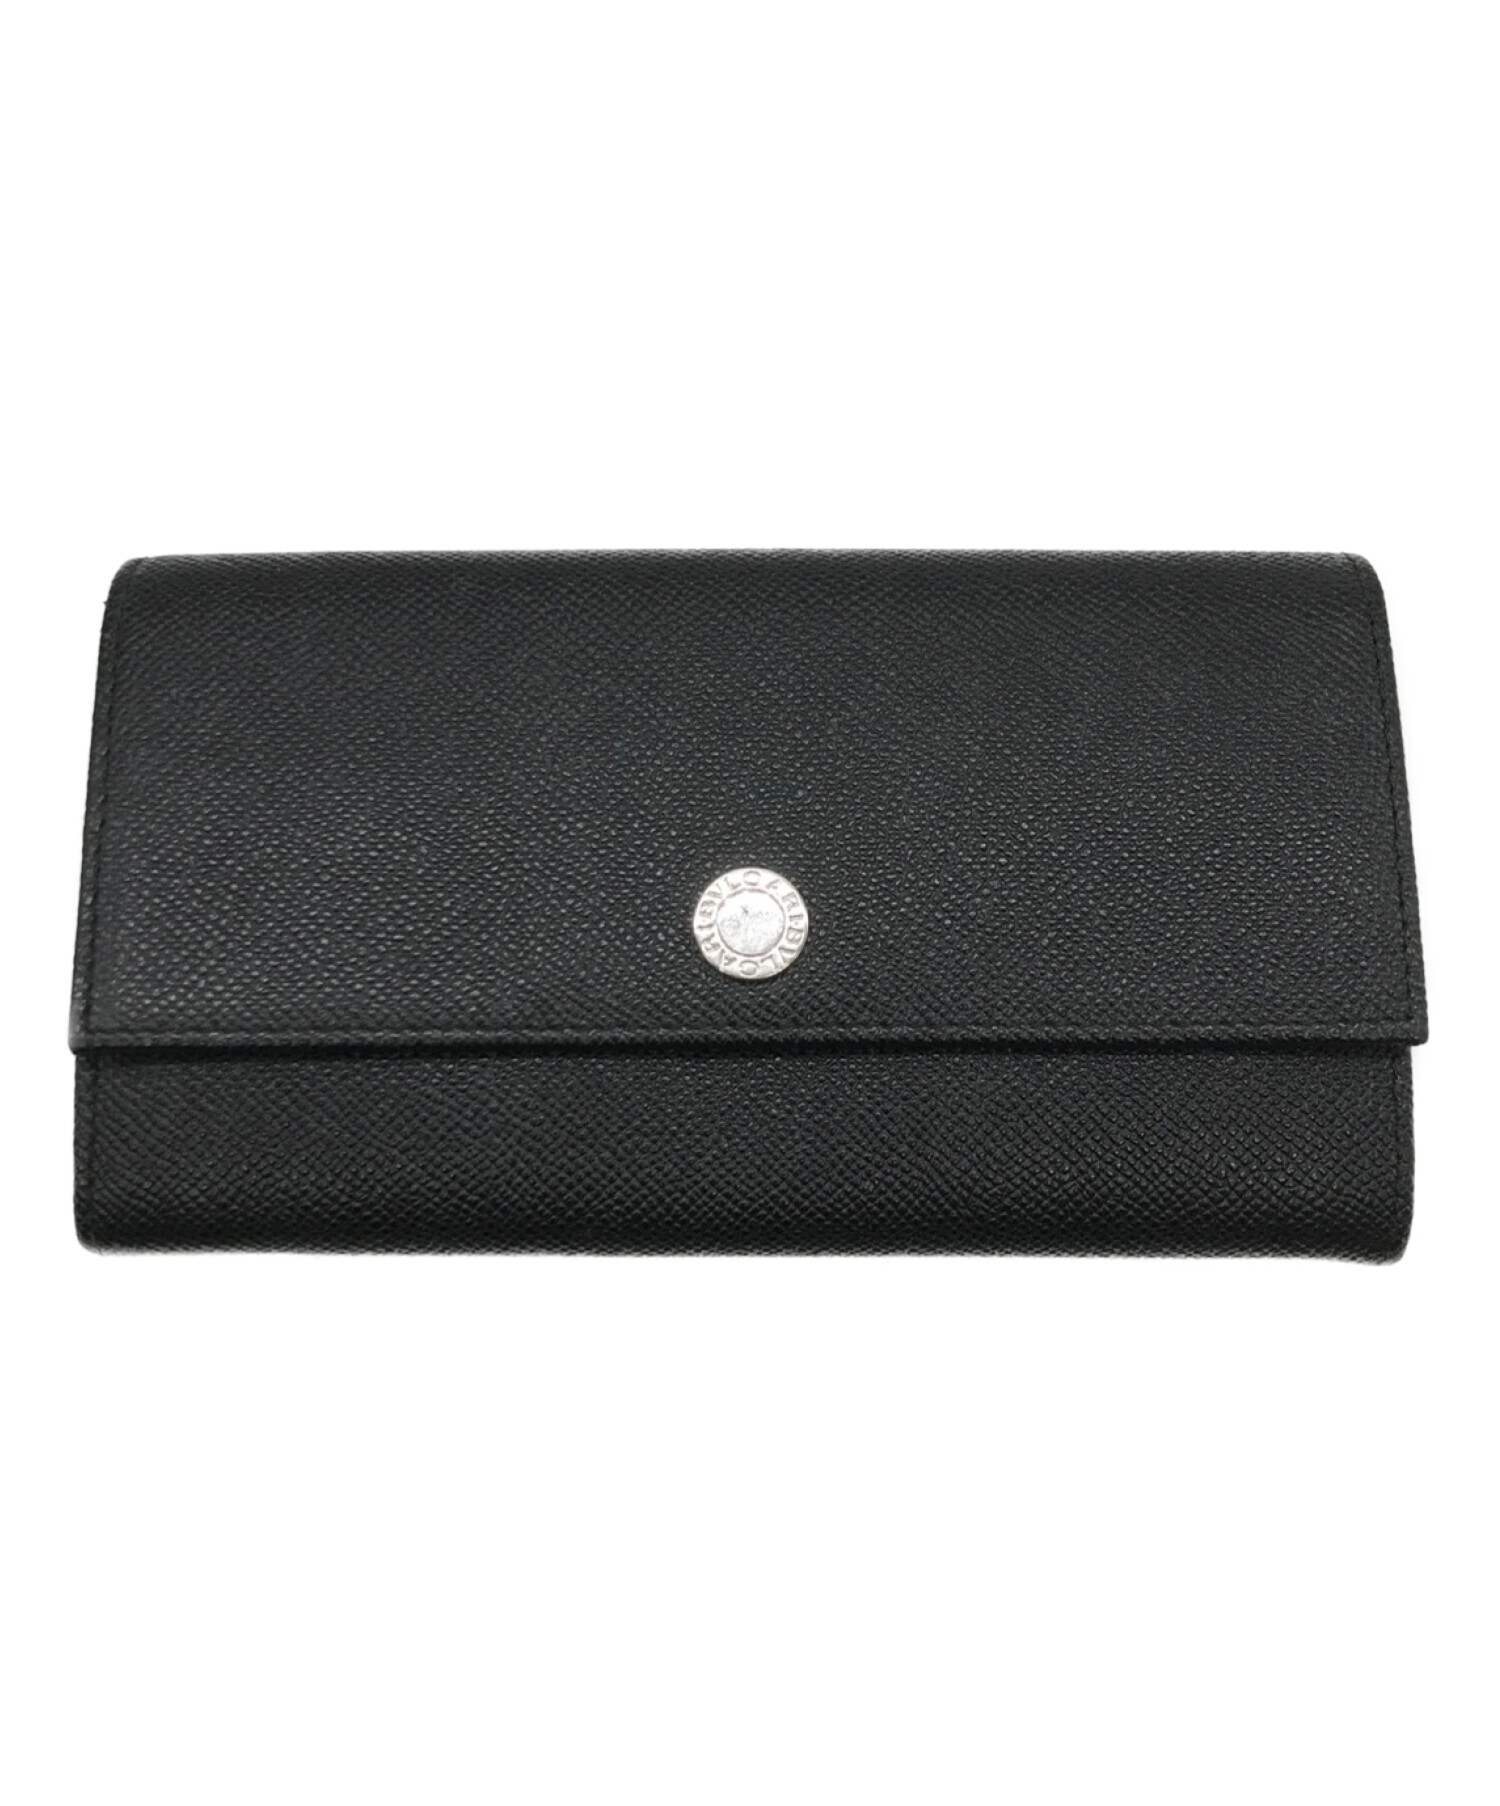 正規品 ブルガリ クラシコ 二つ折り 財布 サイフ 黒